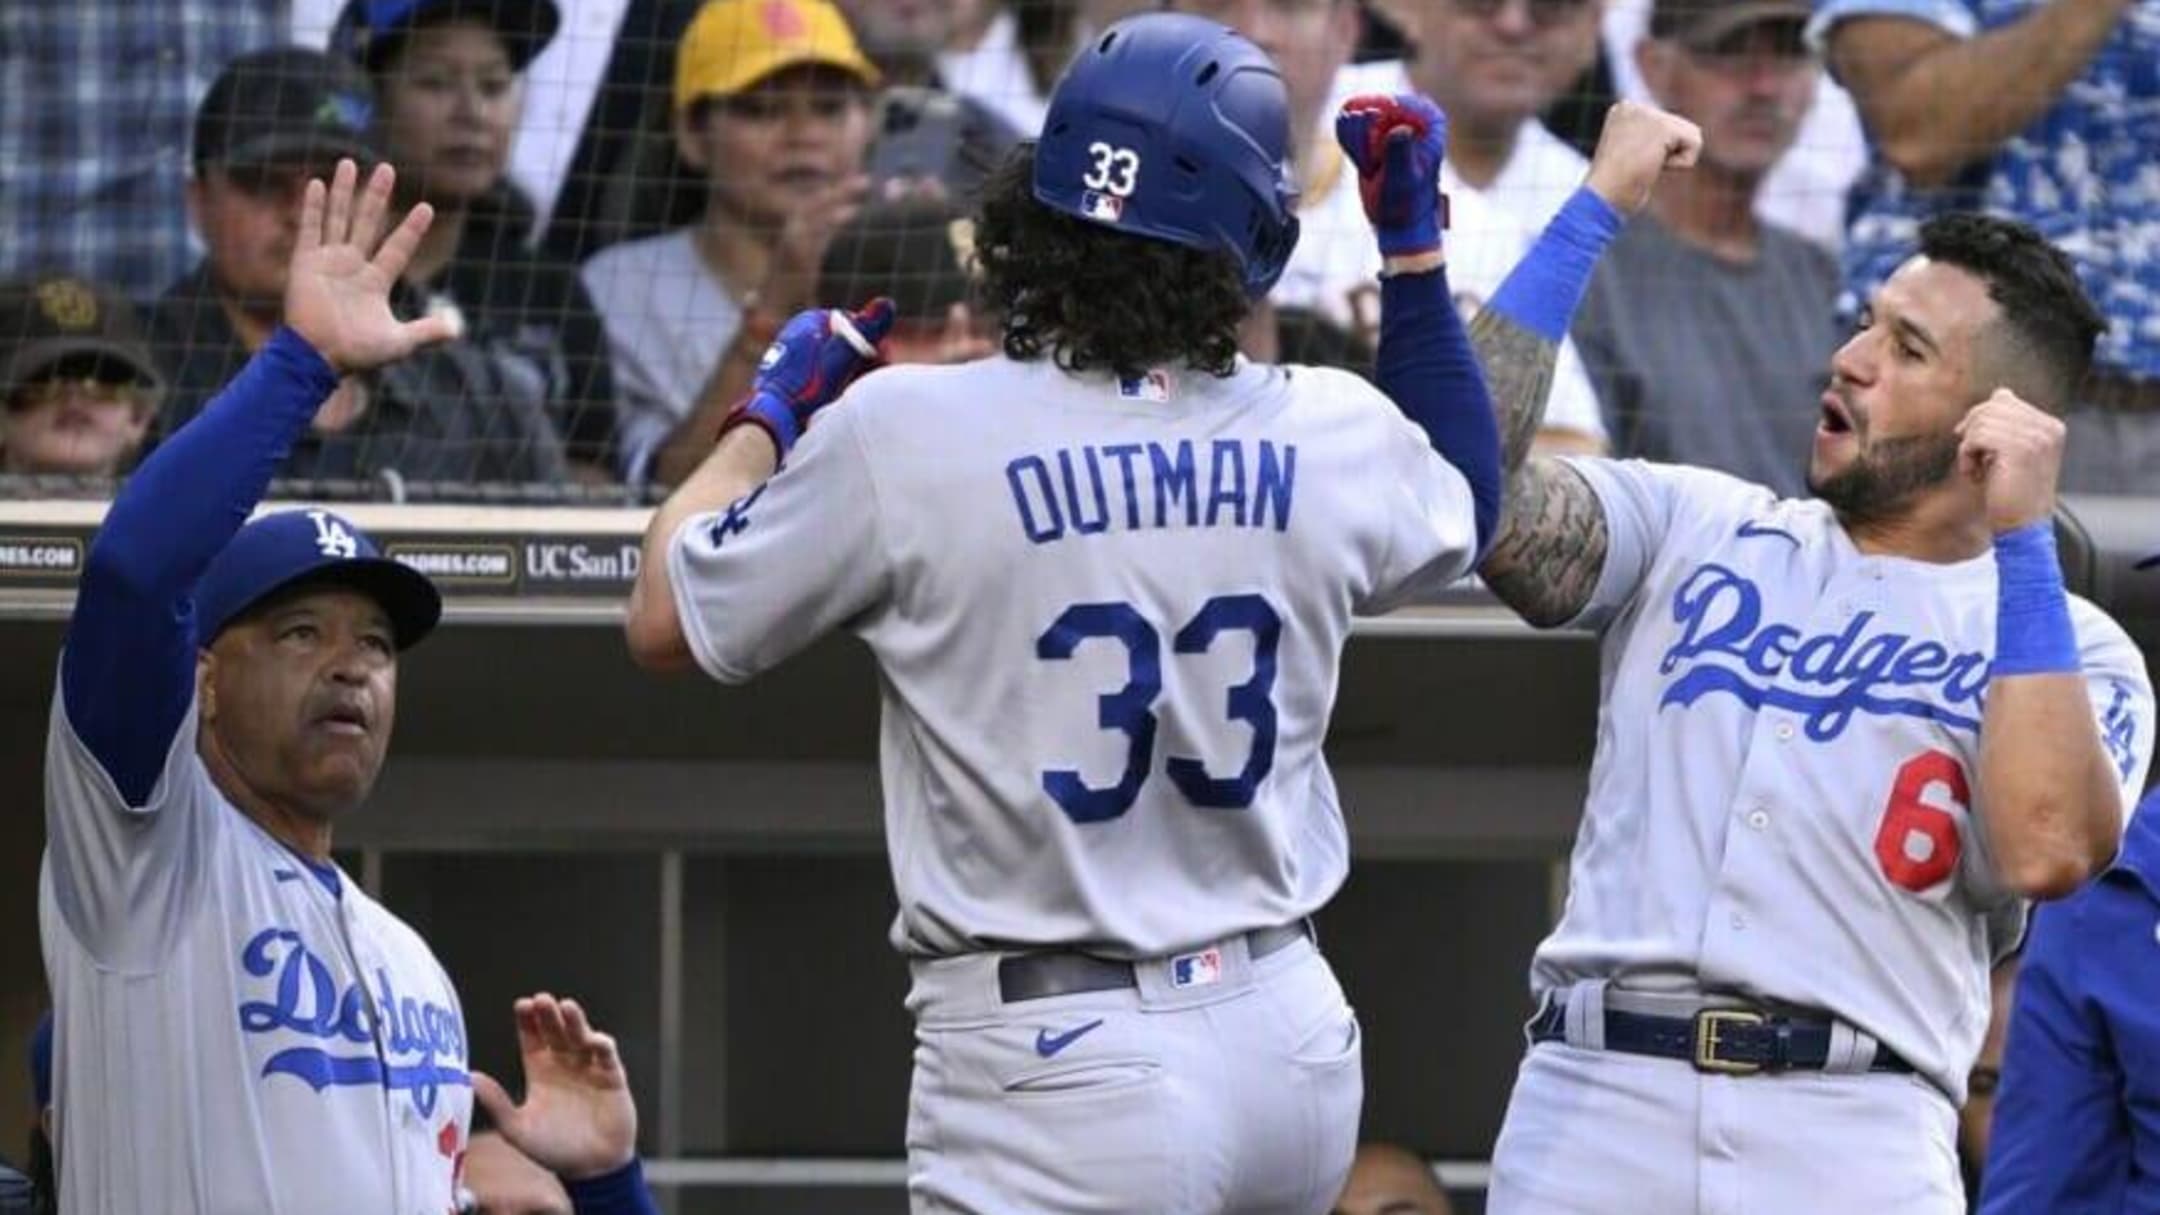 James Outman La Dodgers Stadium Shirt